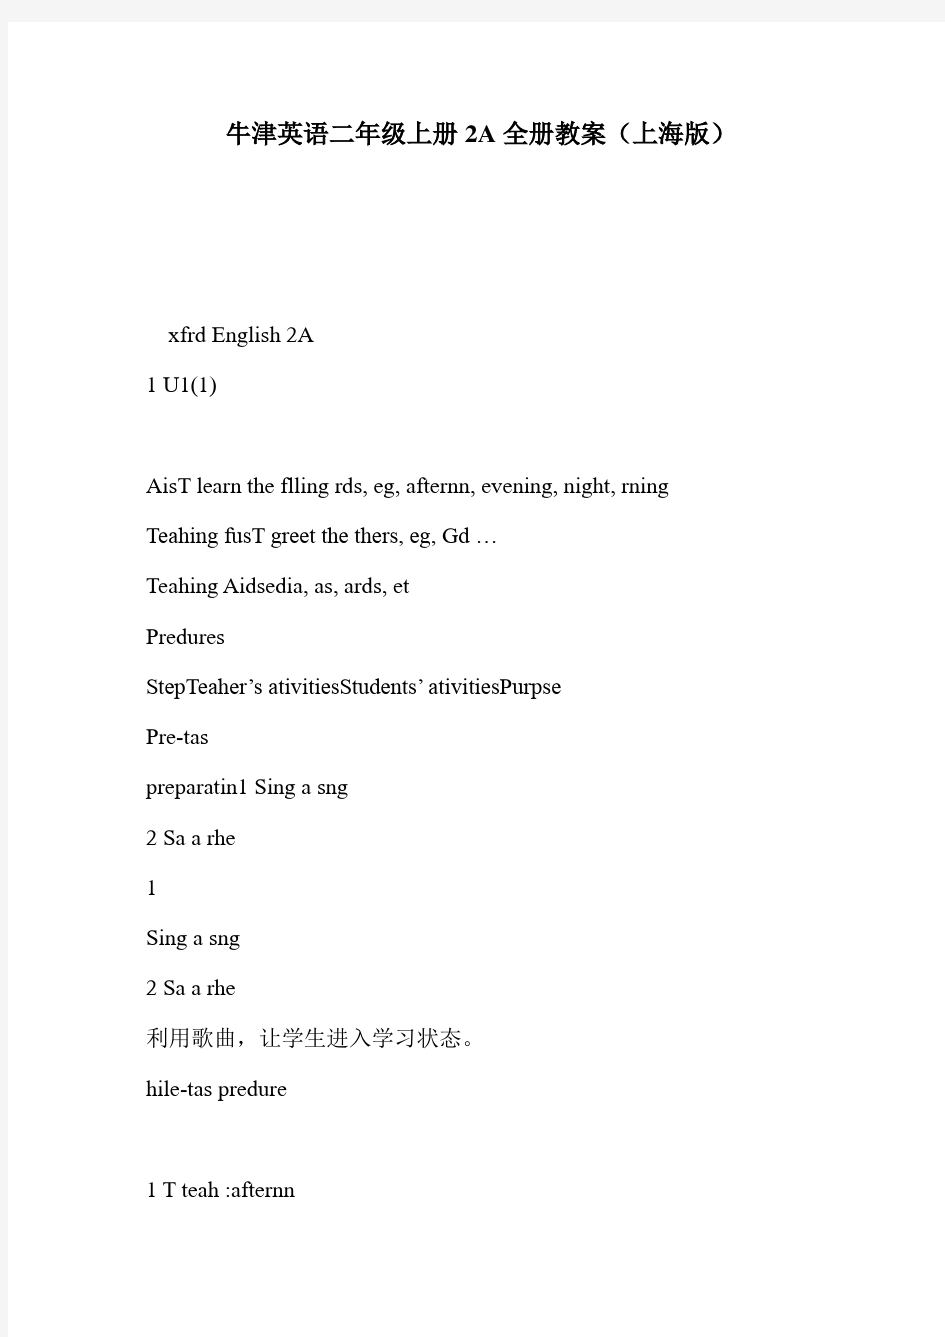 牛津英语二年级上册2A全册教案(上海版)